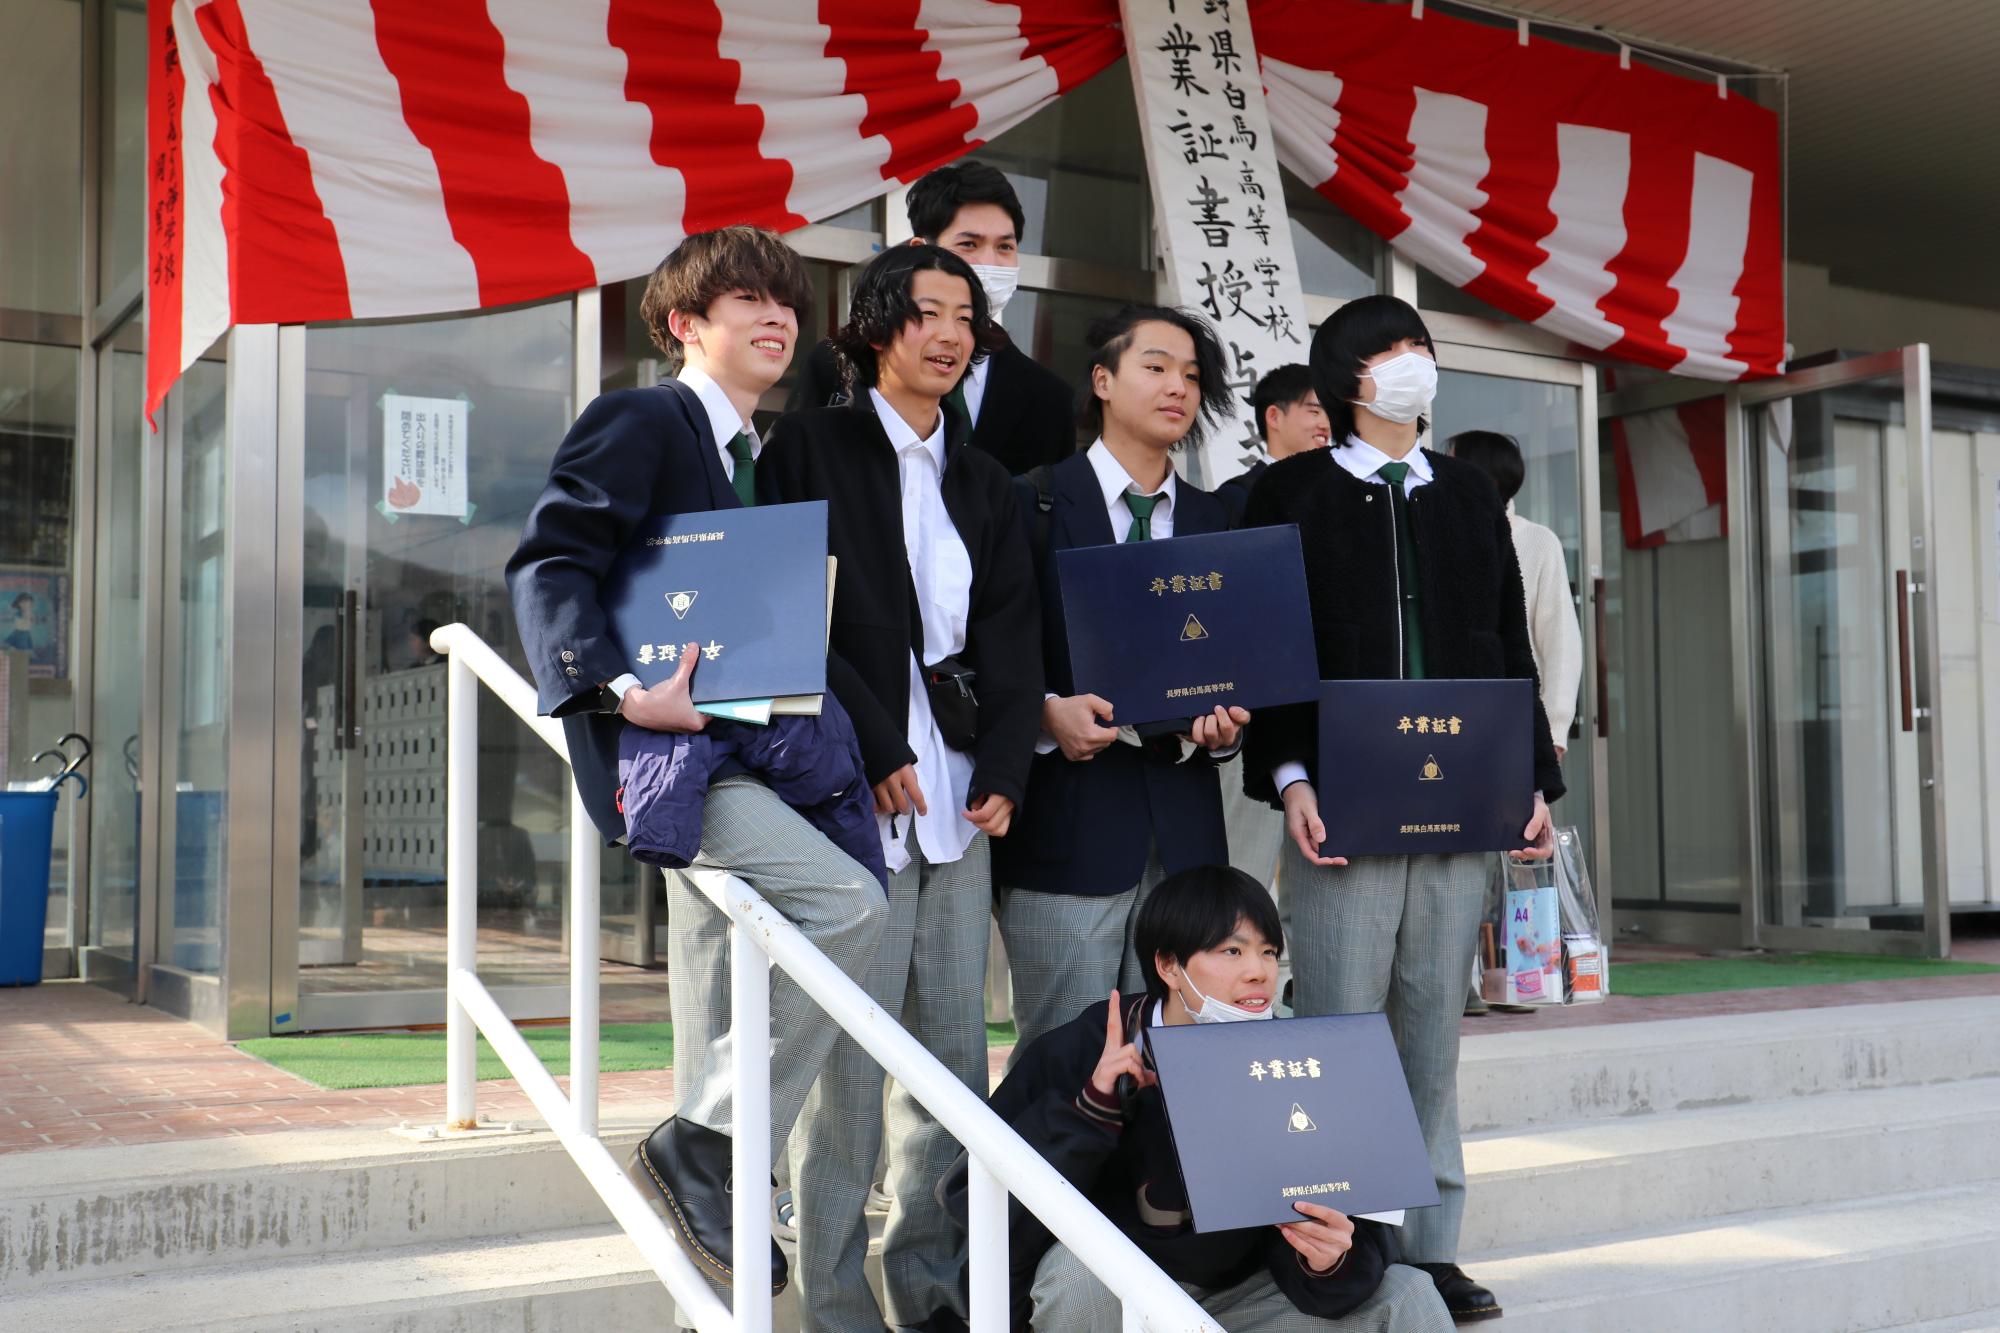 卒業証書授与式終了後、昇降口前で写真撮影をする男子生徒たち